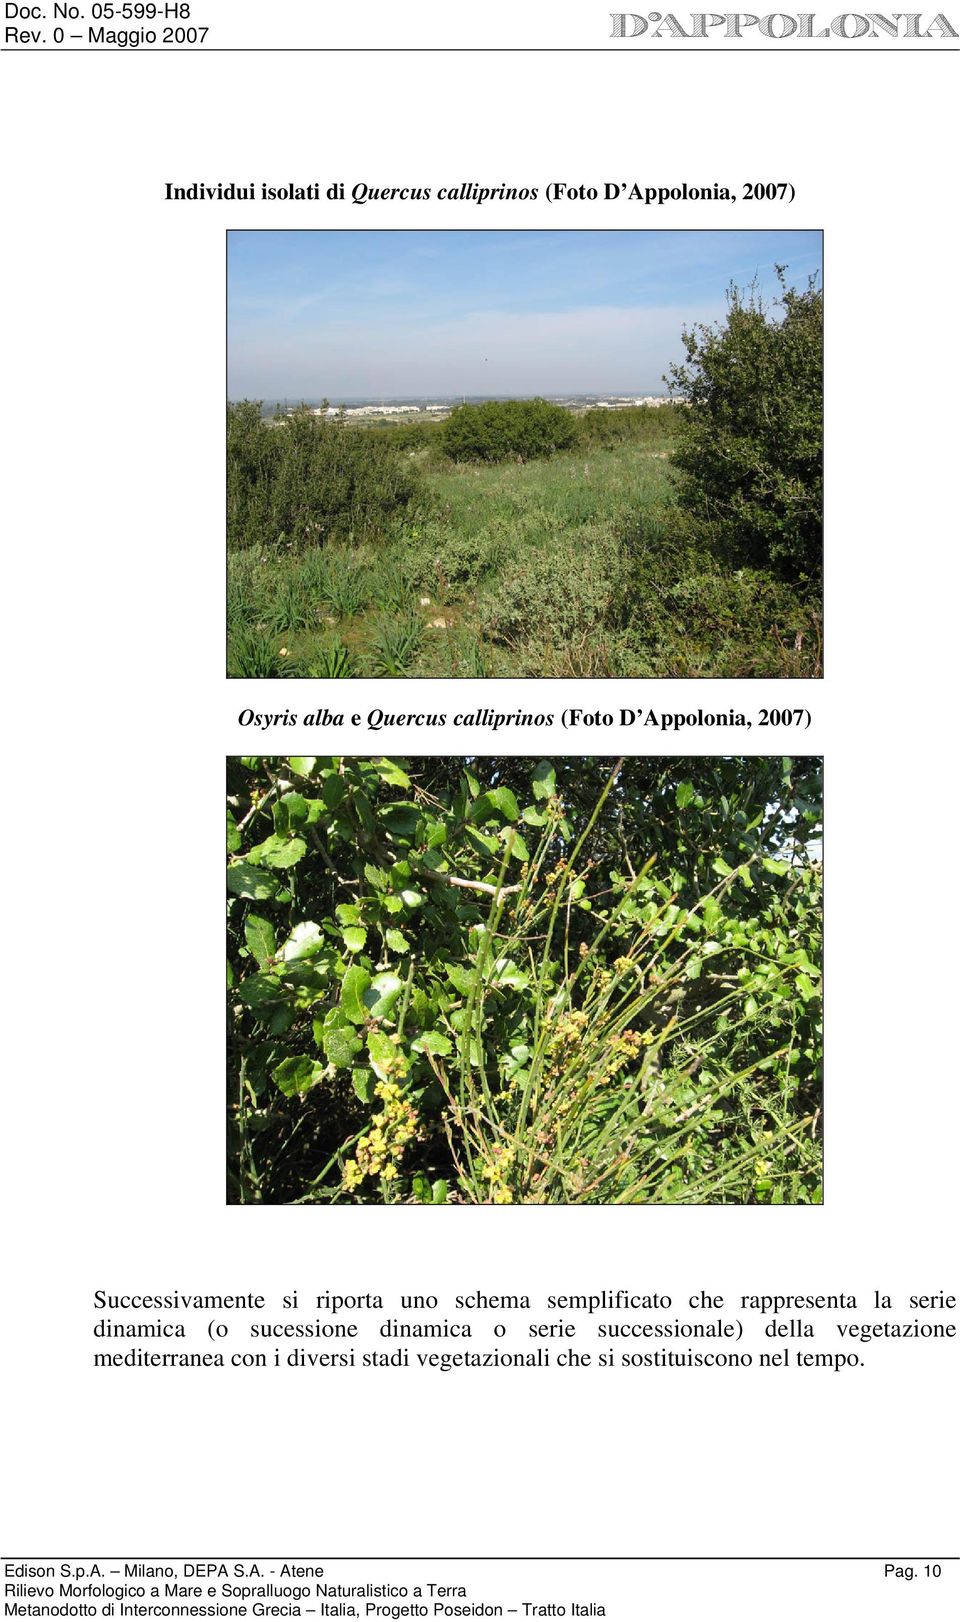 serie dinamica (o sucessione dinamica o serie successionale) della vegetazione mediterranea con i